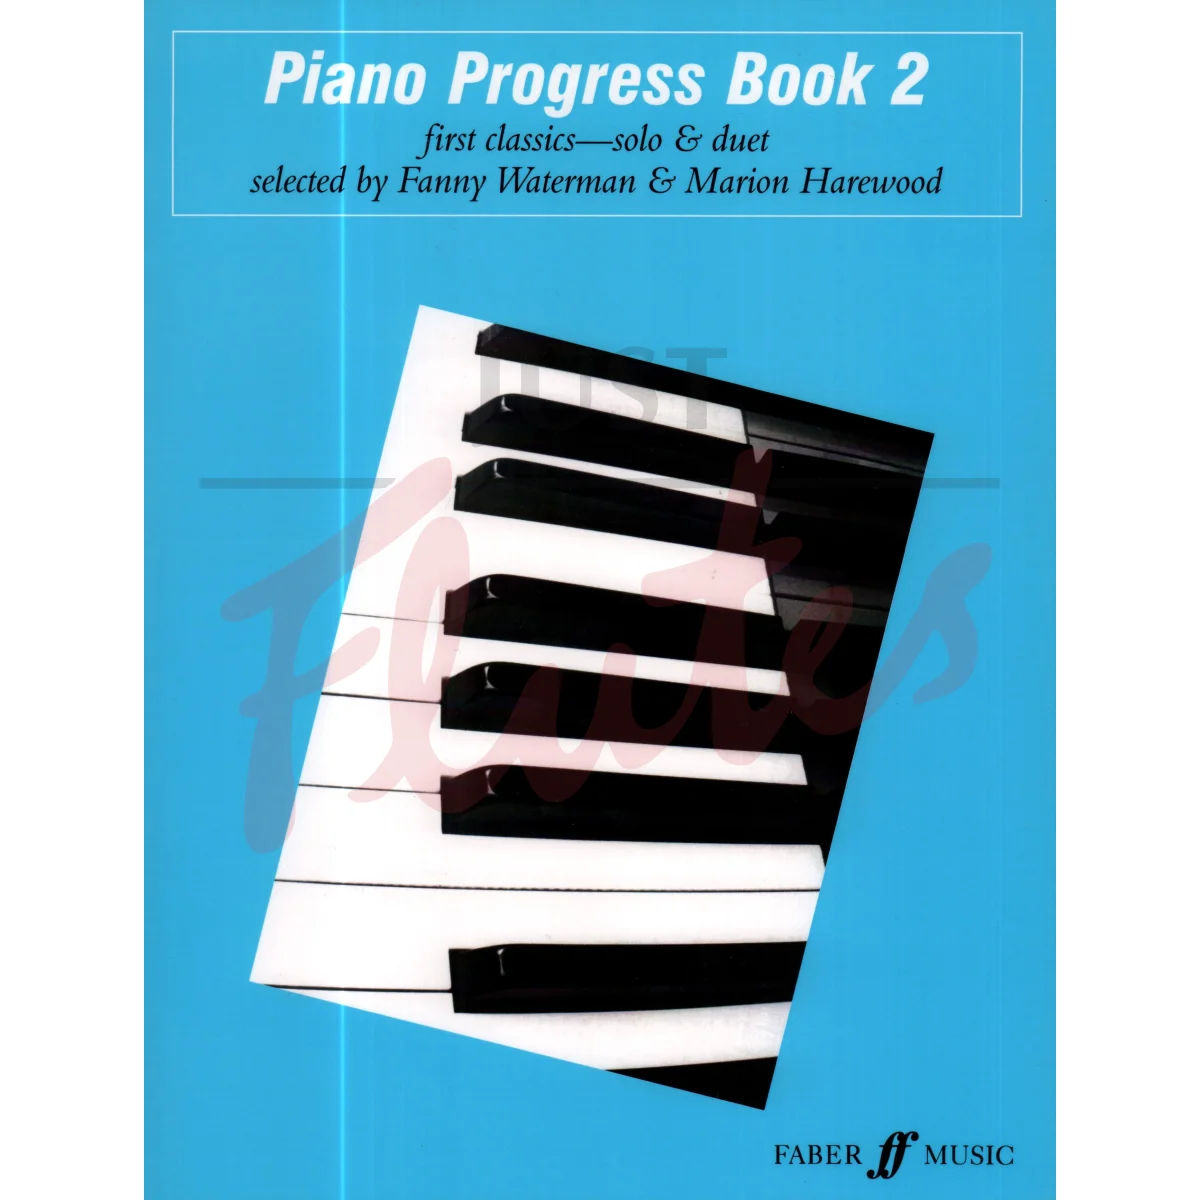 Piano Progress Pieces Book 2